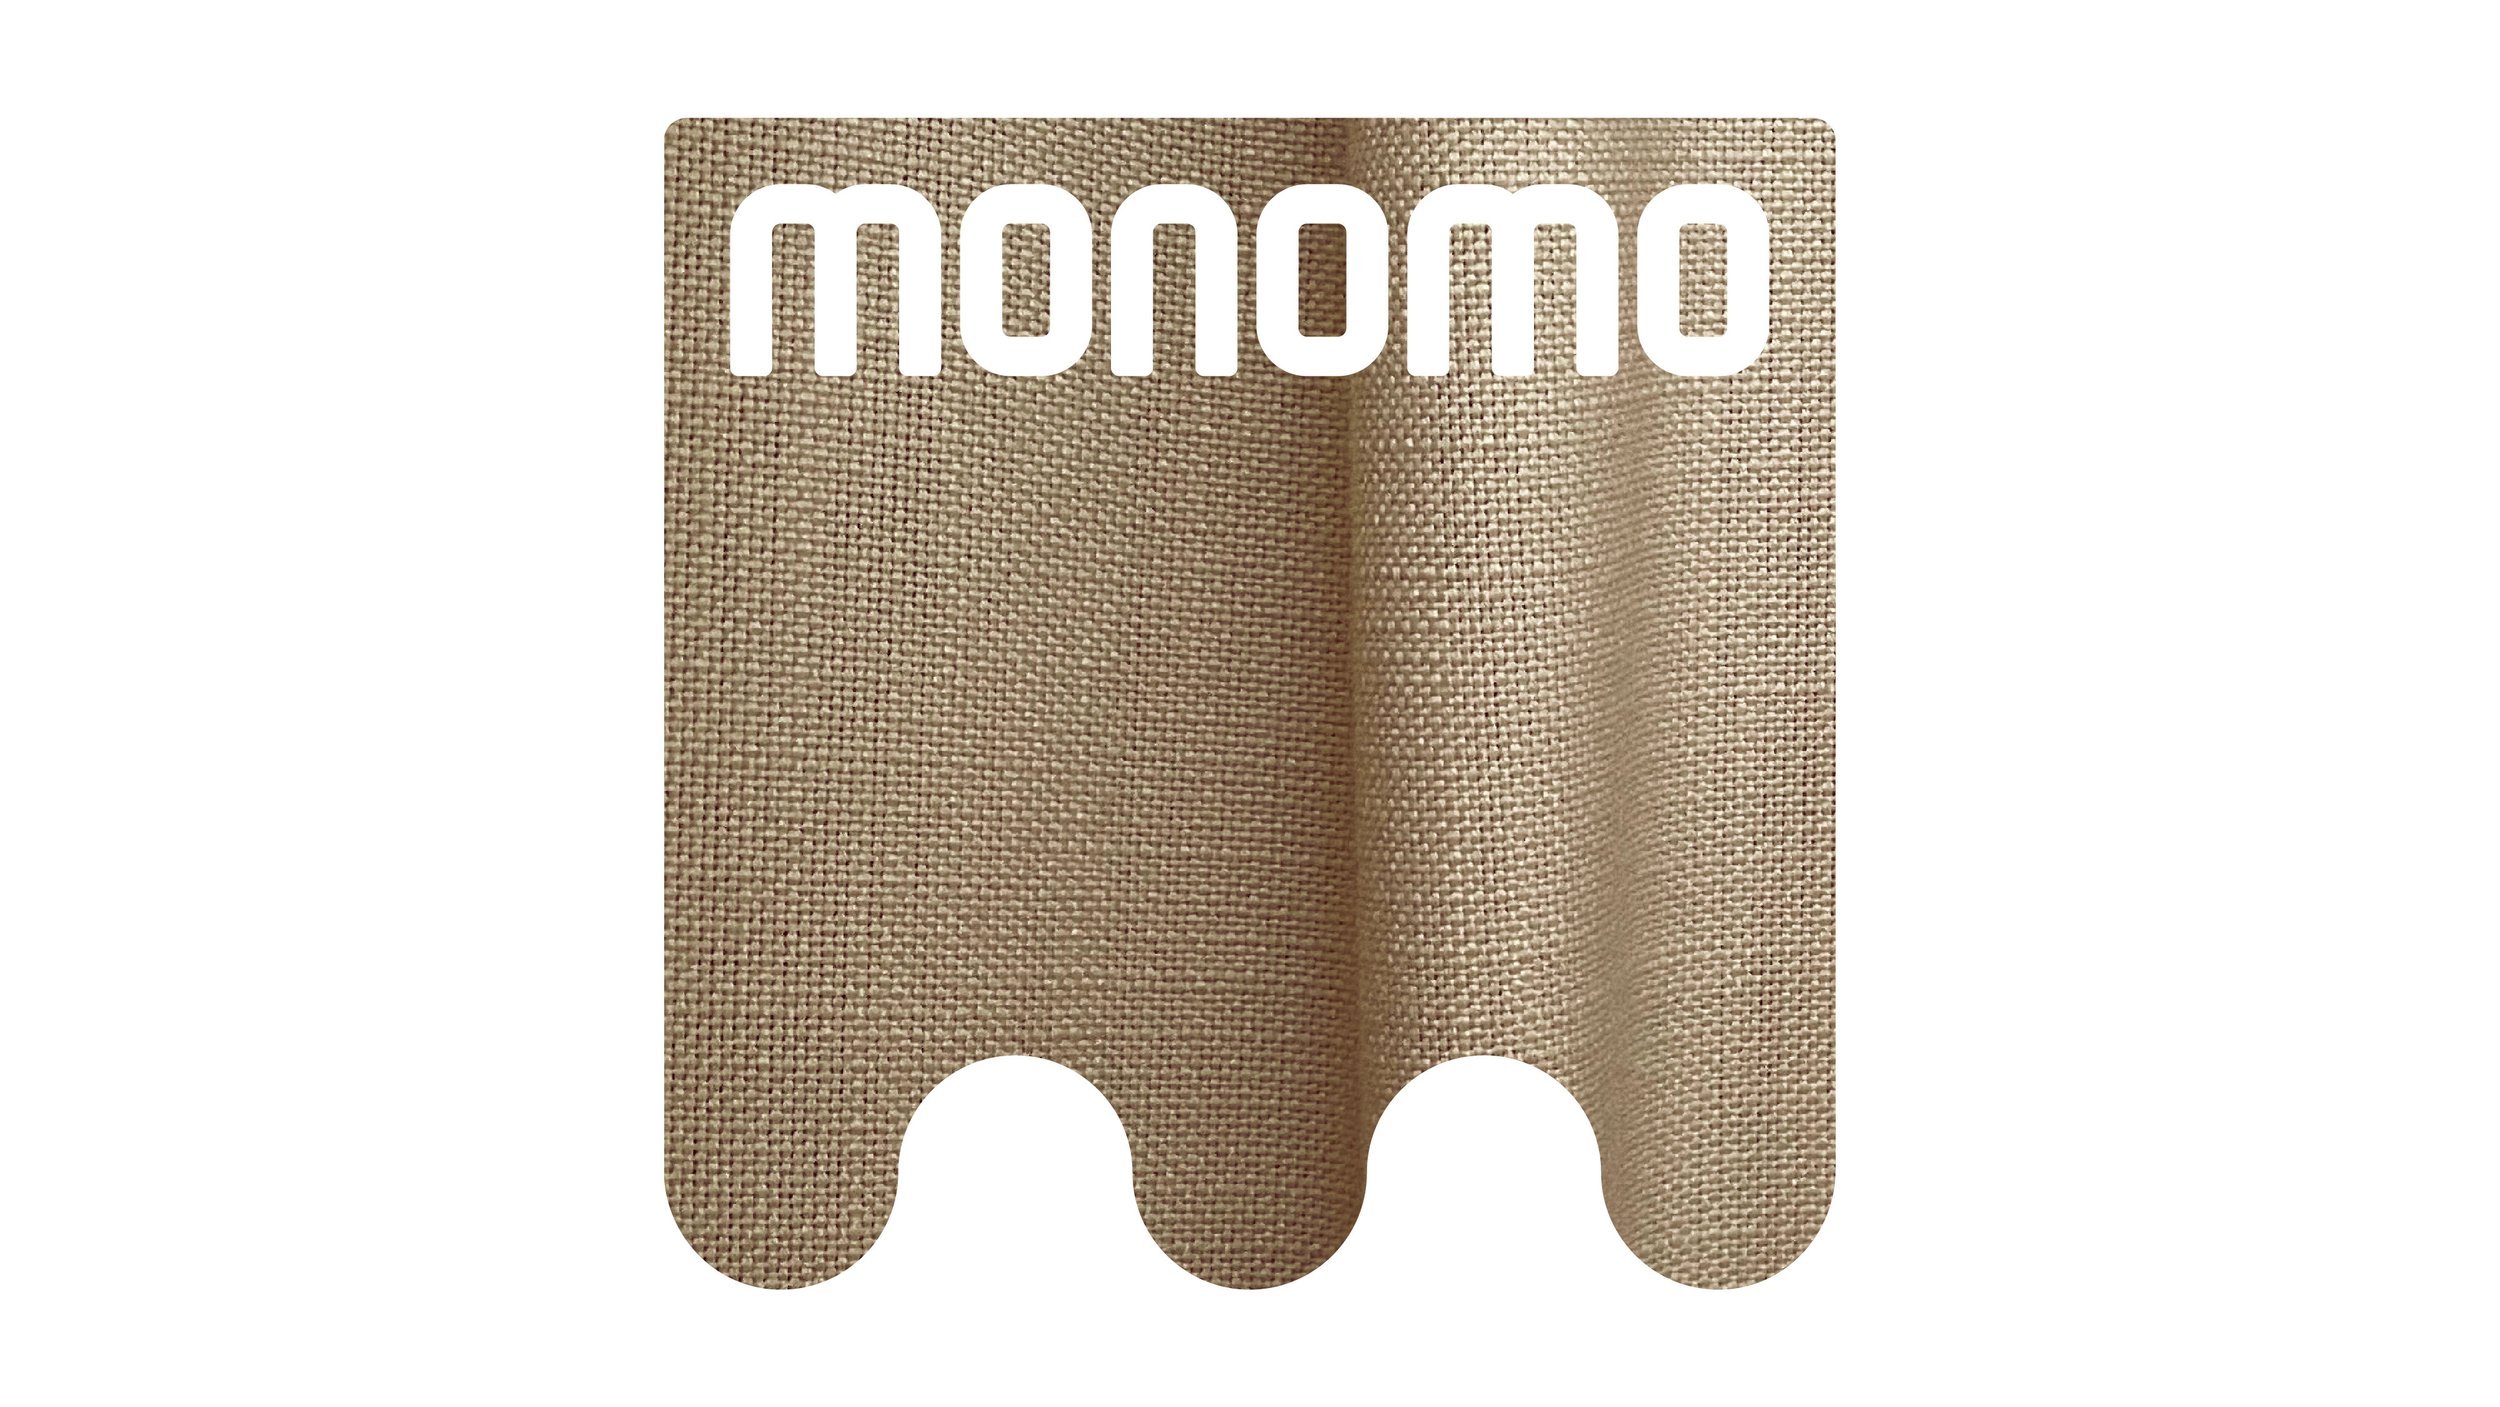 monomo_logo_5-08.jpg